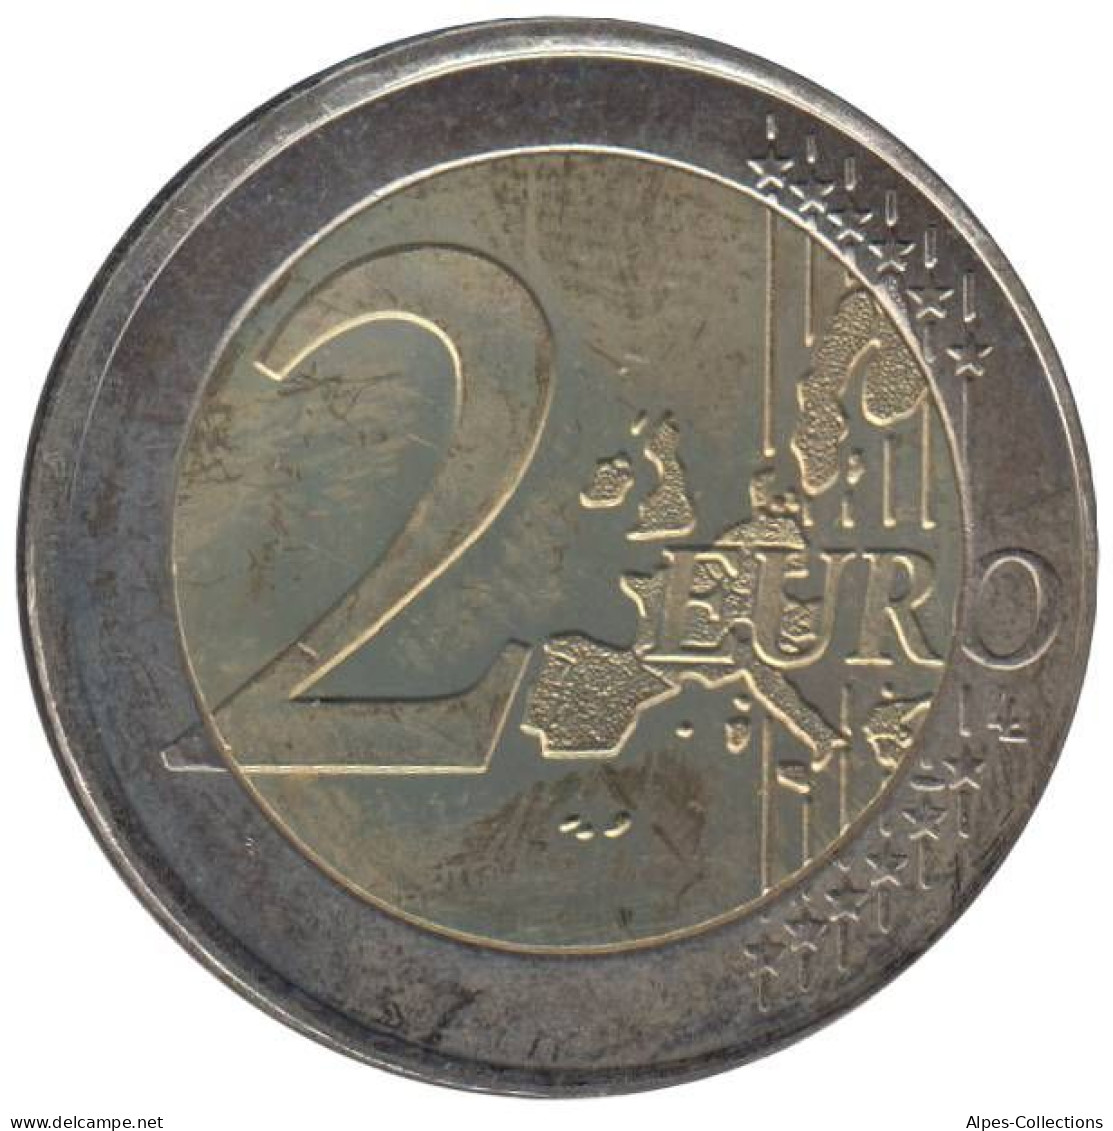 GR20002.2 - GRECE - 2 Euros - 2002 S - Atelier Finlande - Grecia